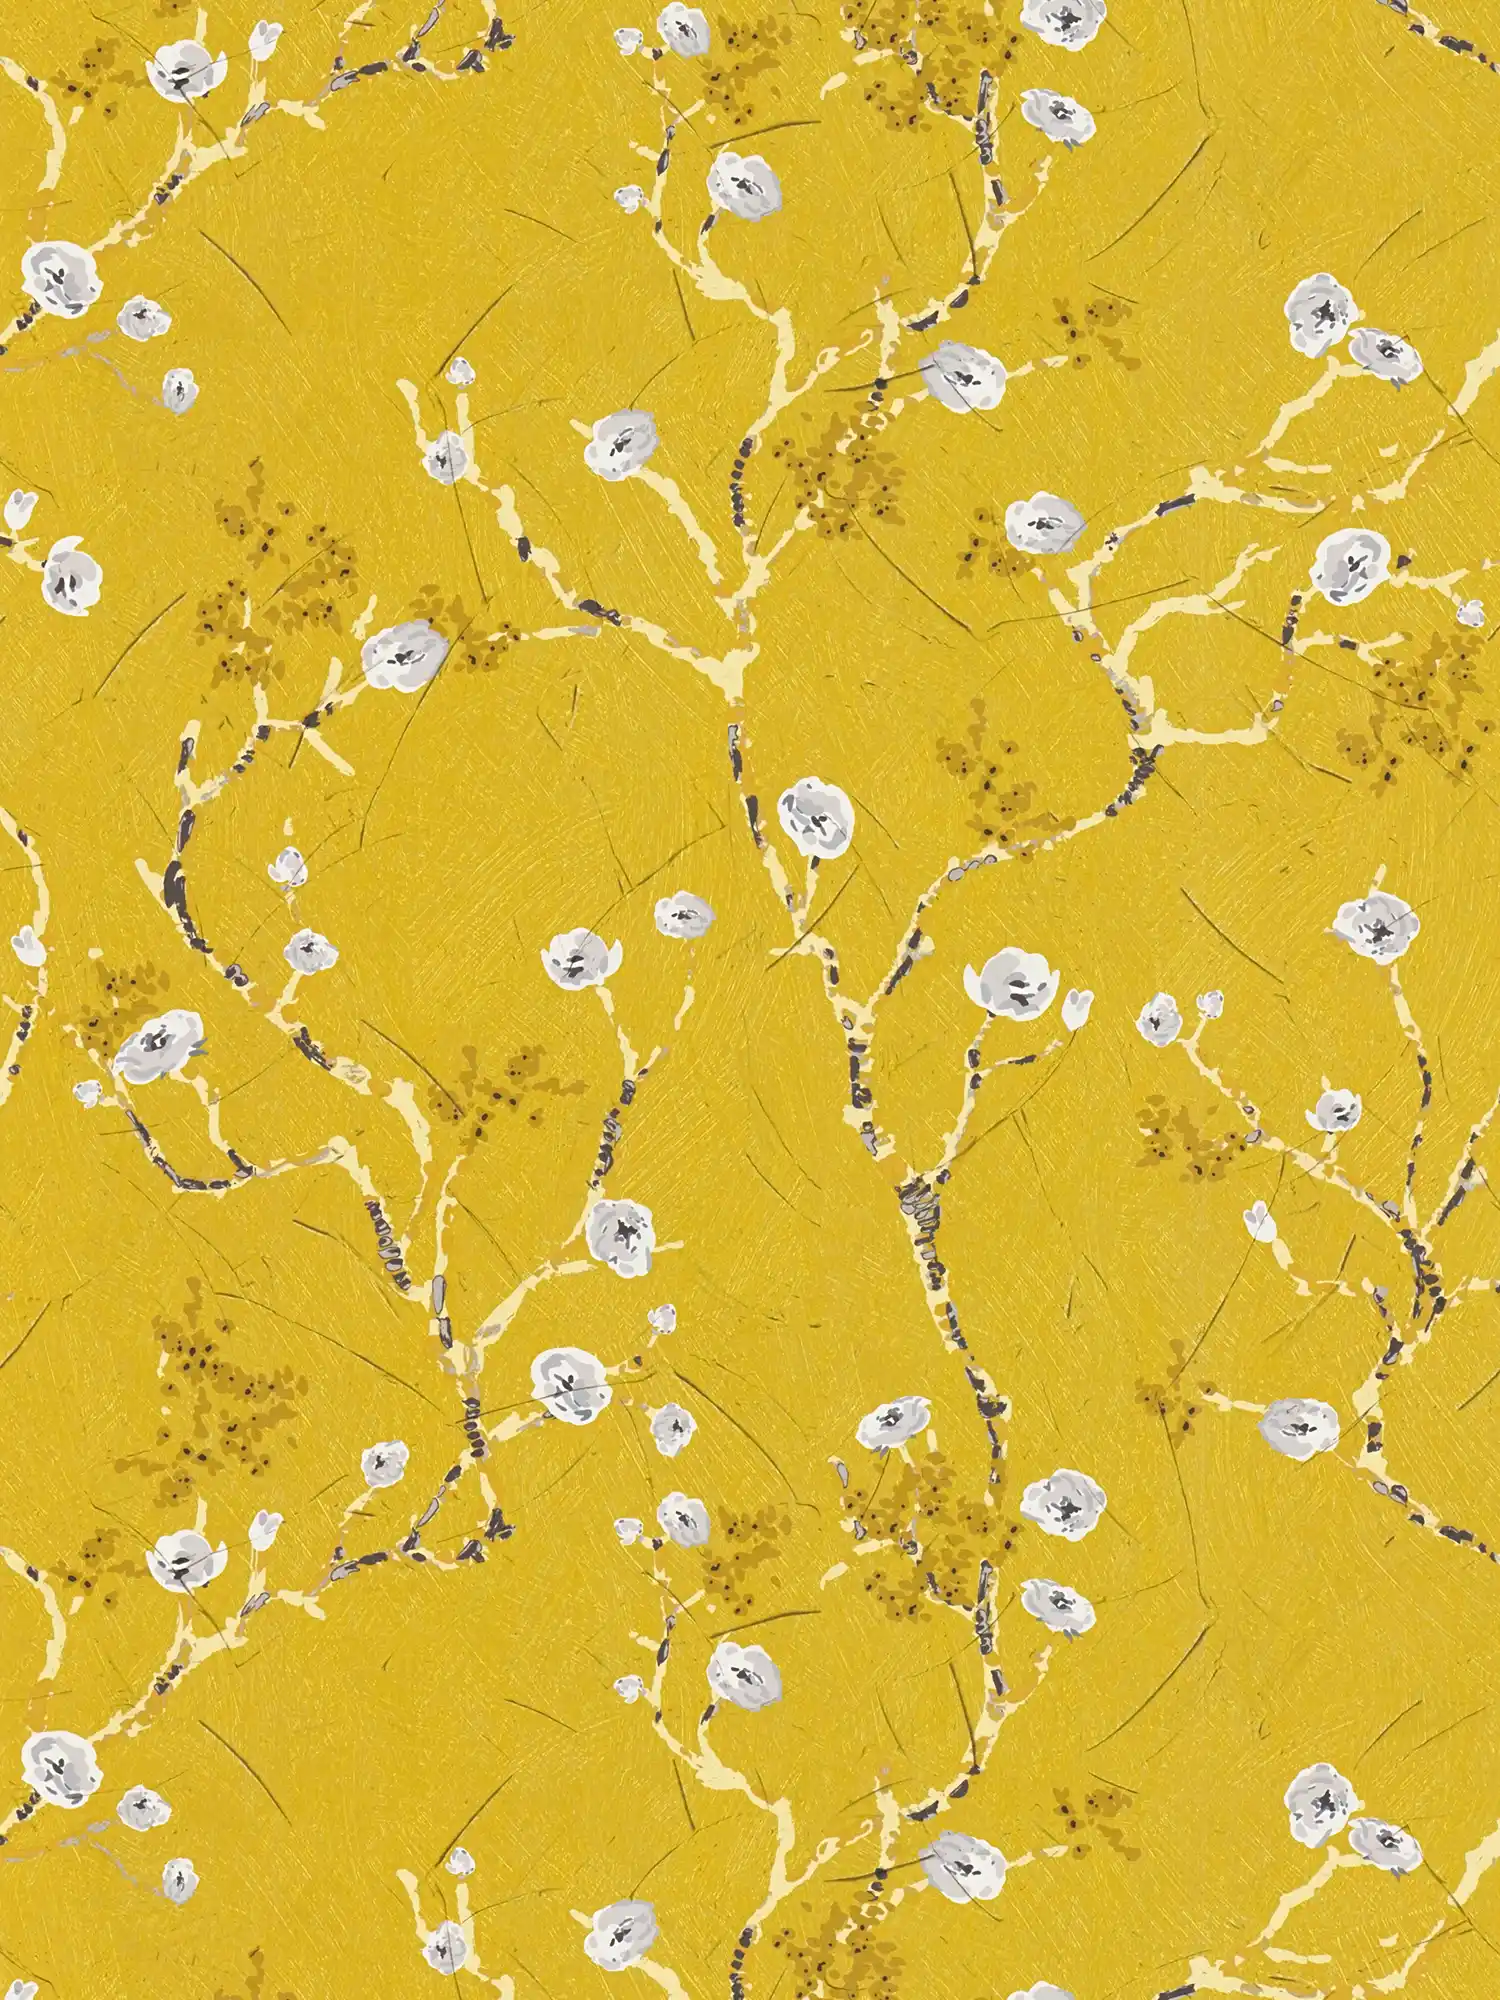 Carta da parati gialla con rami fioriti in stile disegno
